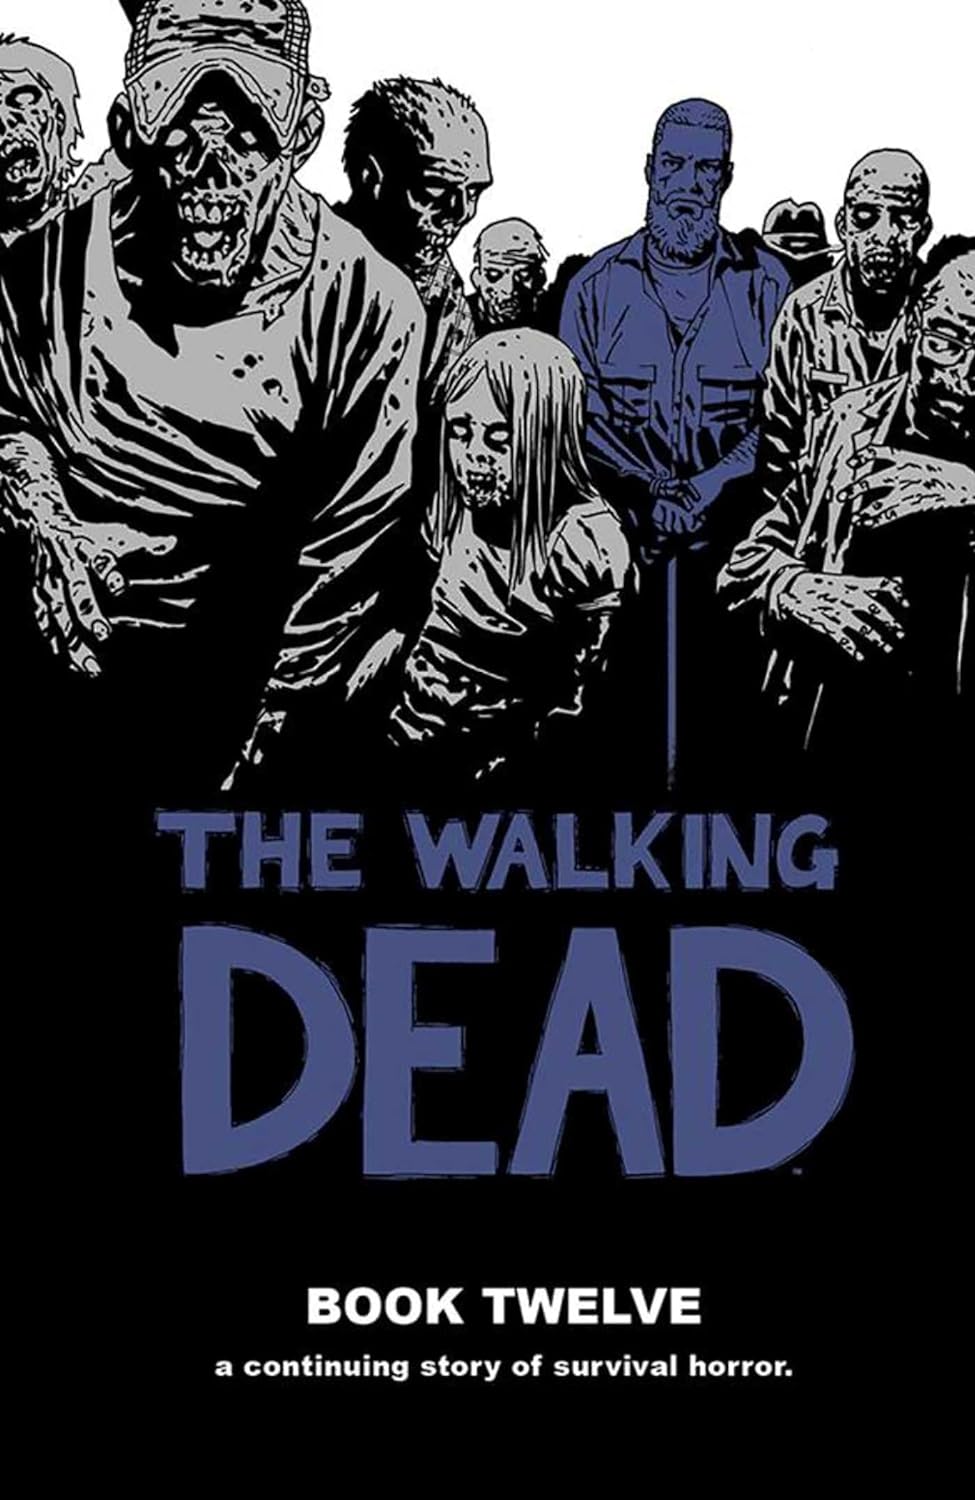 The Walking Dead Book Twelve Hardcover 2015